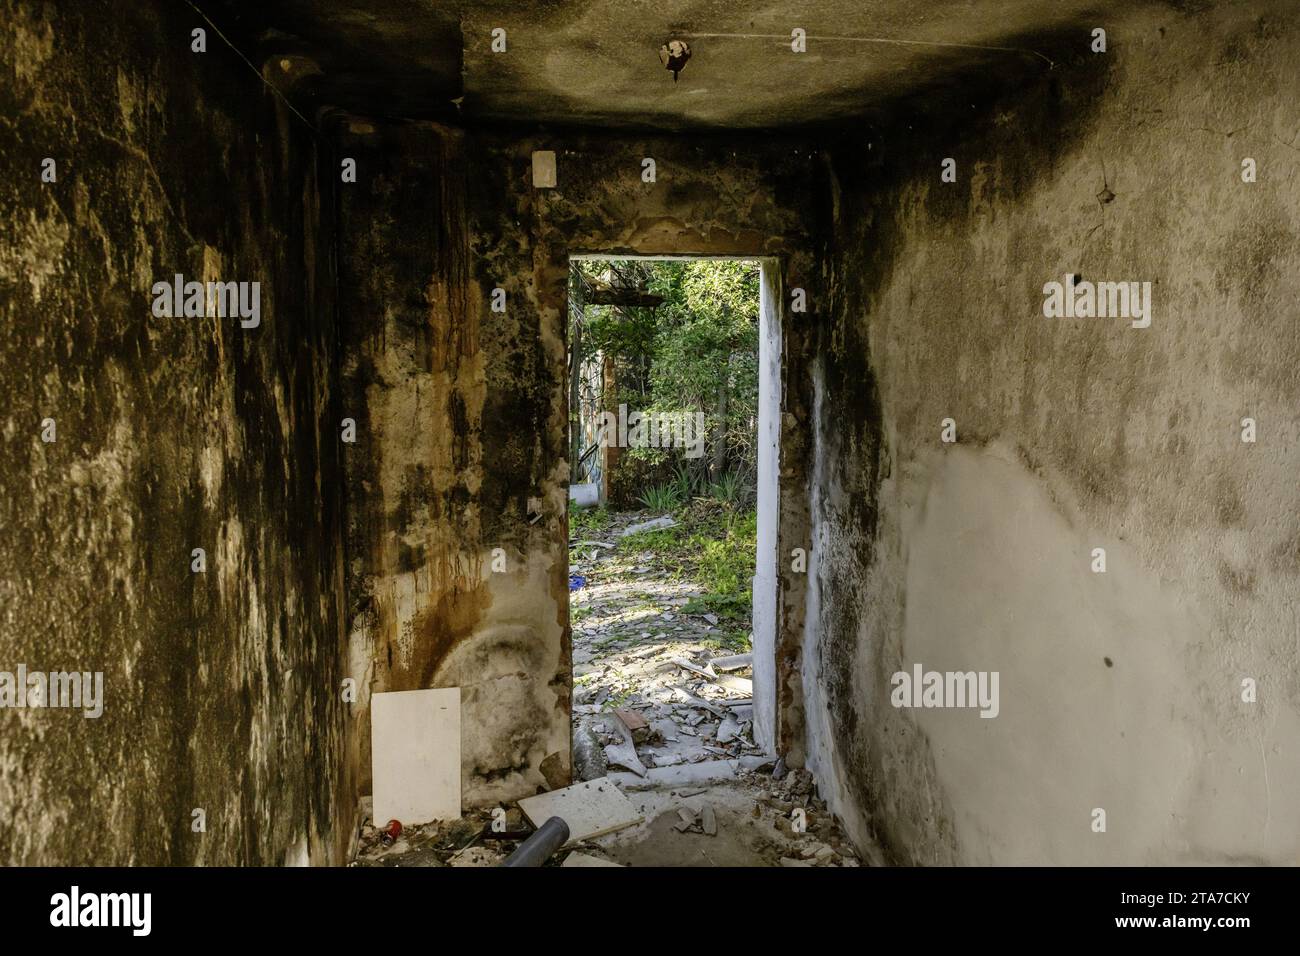 Interno di un edificio in rovina con pareti parzialmente distrutte piene di erbacce Foto Stock